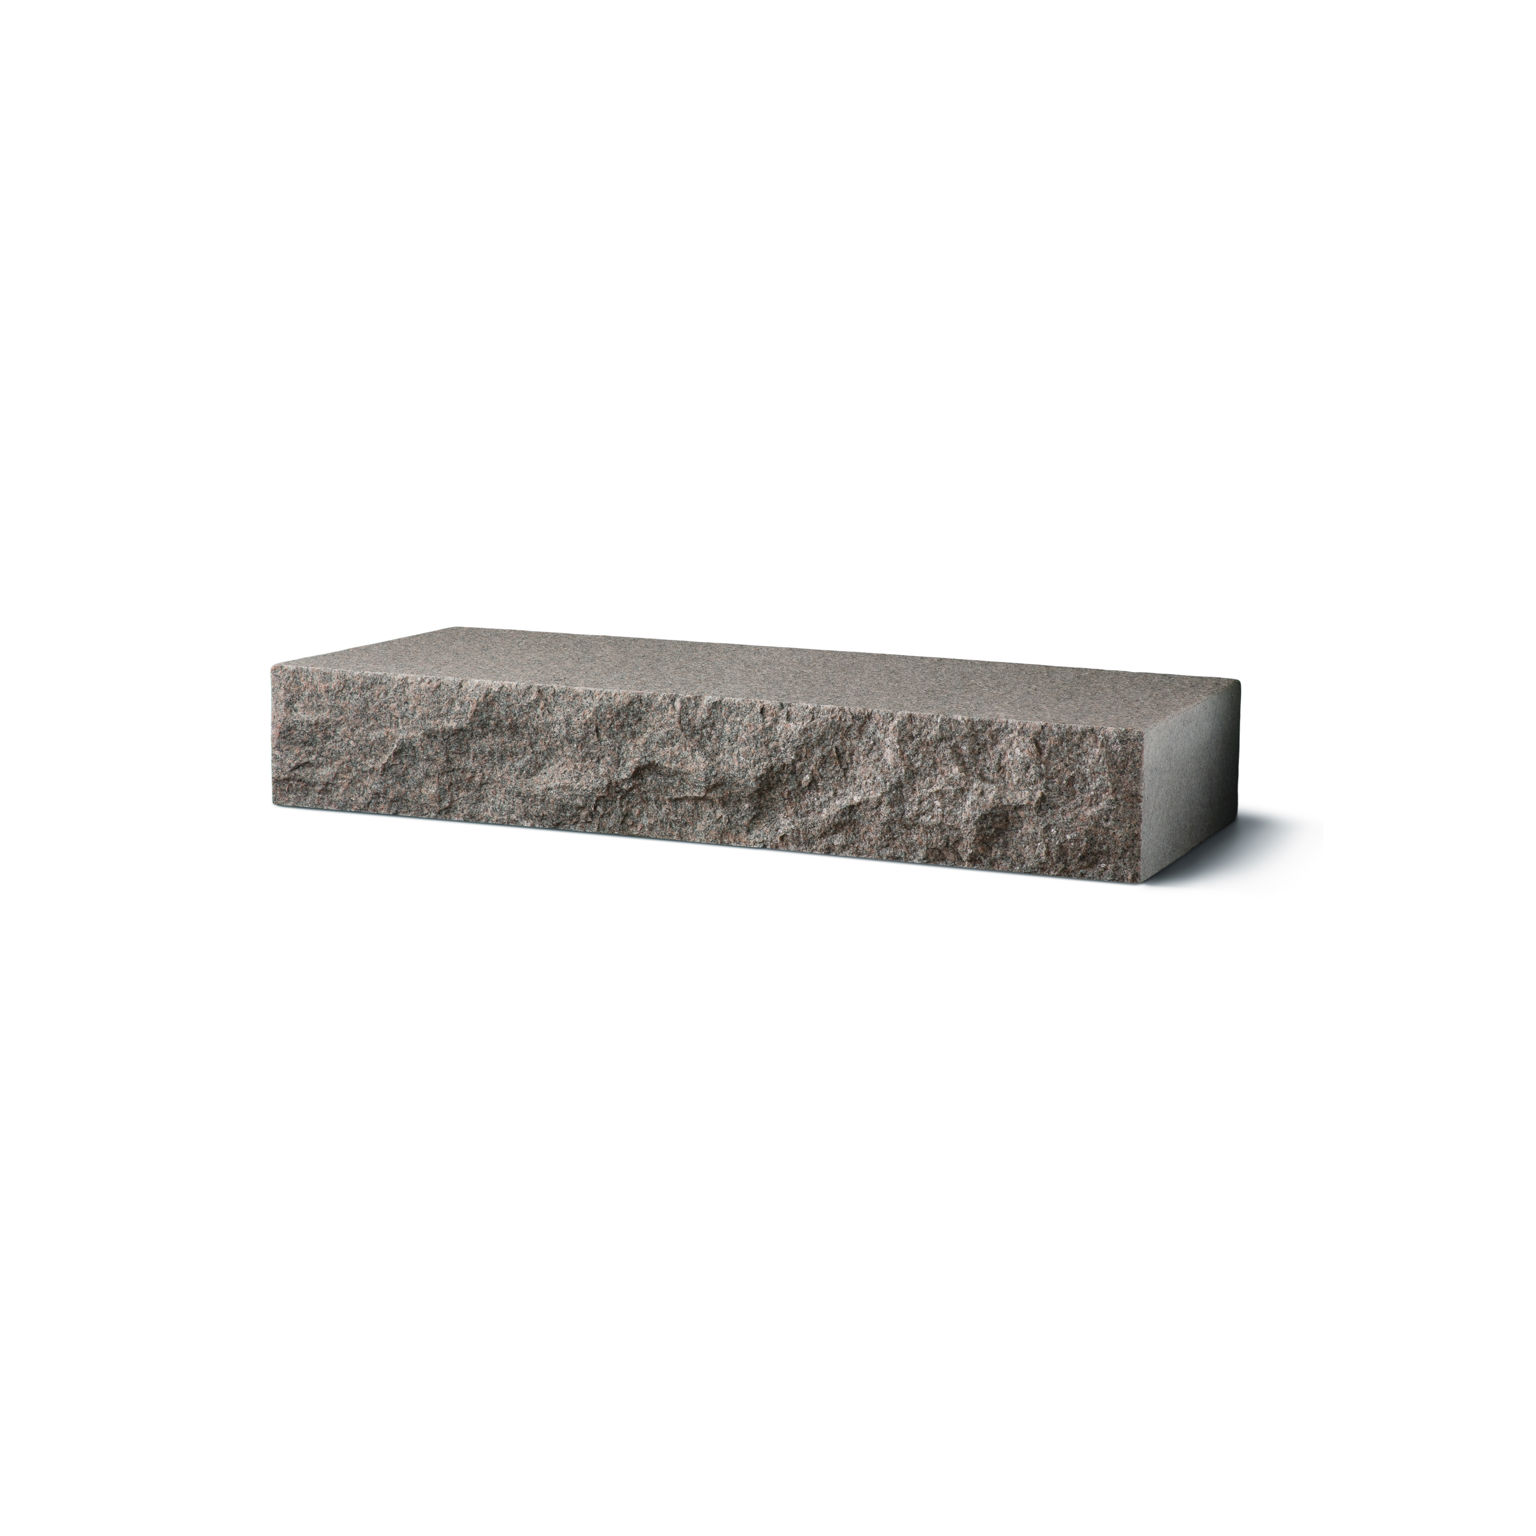 Produktbild på blocksteg i granit med flammad topp och råkilad front;i måtten 1200x350x150 mm och i färgen Bohus grå.